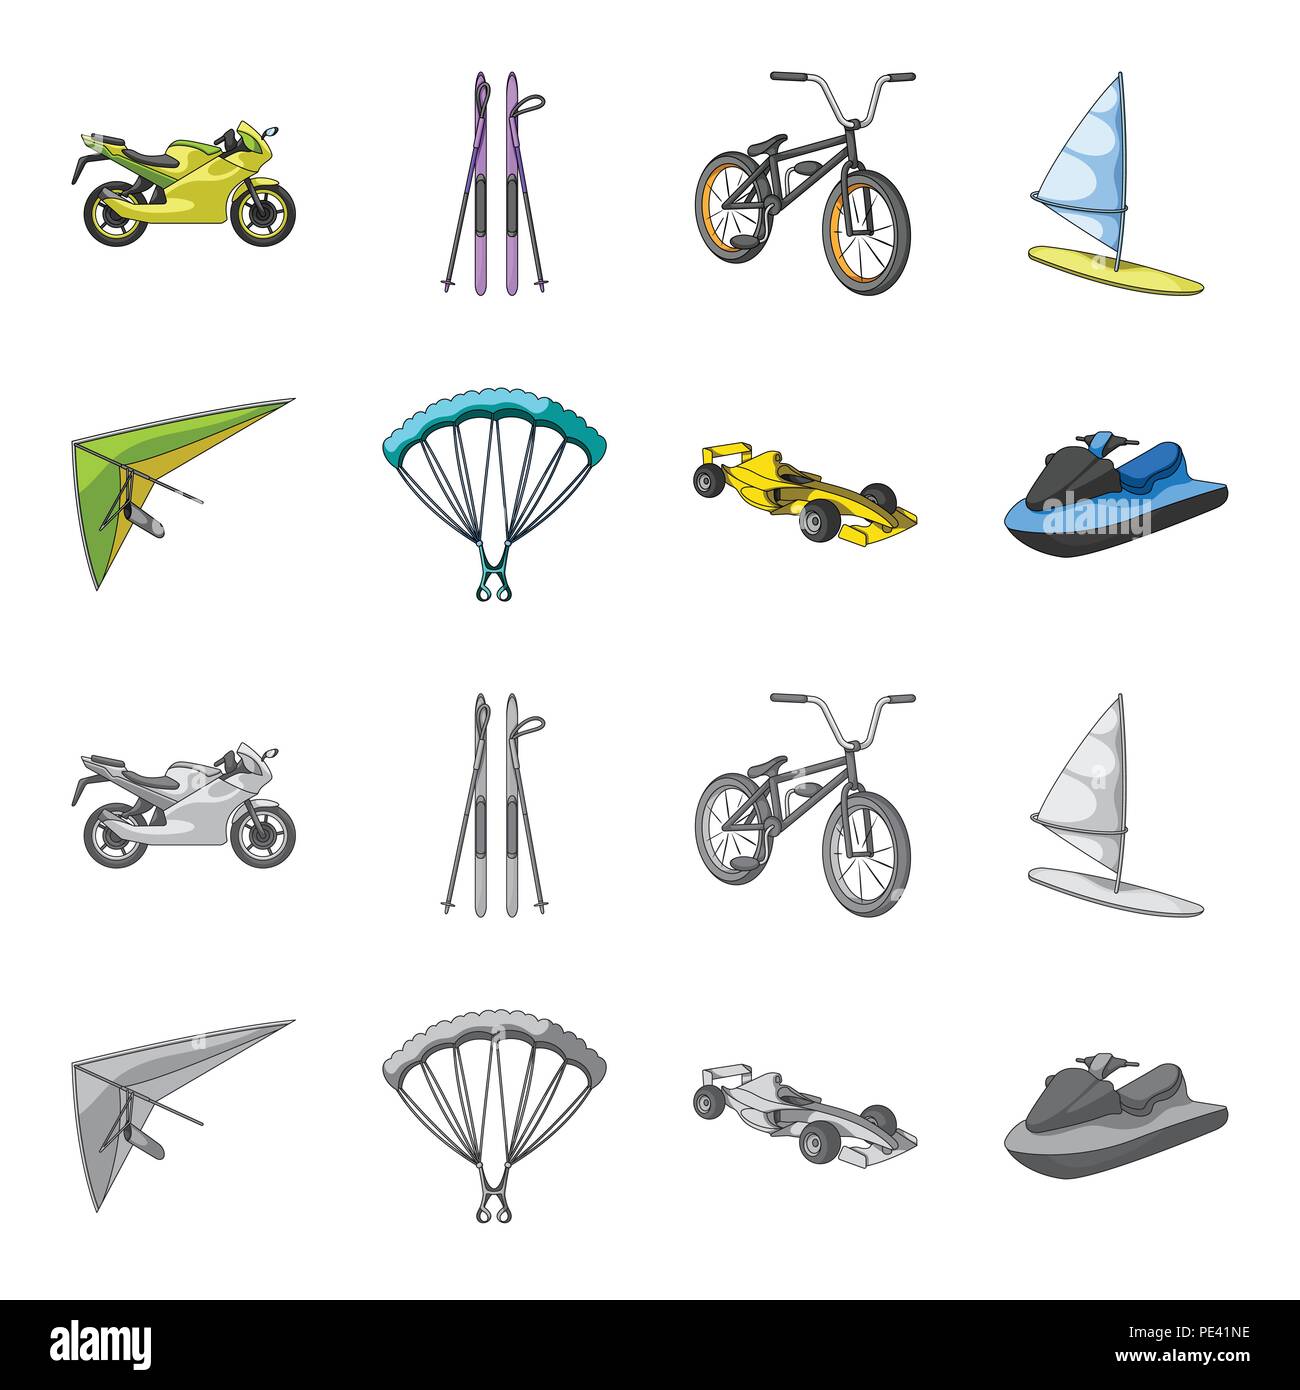 Hängegleiter, Fallschirm, Rennwagen, Wasser-scooter. Extreme Sport Set Sammlung Icons im Cartoon, Schwarzweiß-Stil vektor Symbol lieferbar Abbildung. Stock Vektor